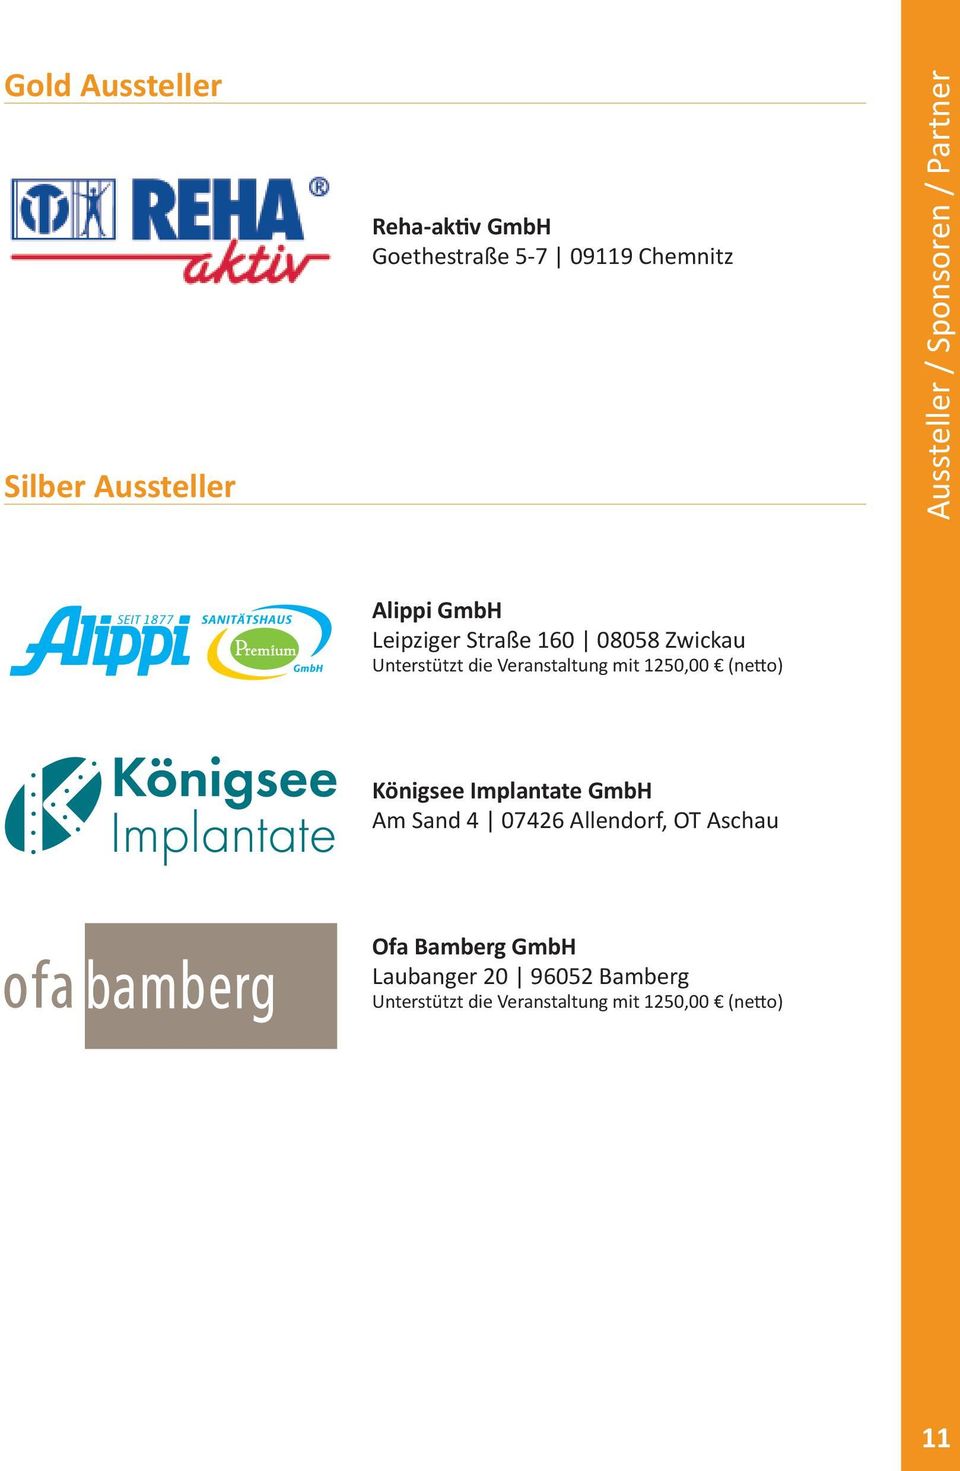 Veranstaltung mit 1250,00 (netto) Königsee Implantate GmbH Am Sand 4 07426 Allendorf, OT